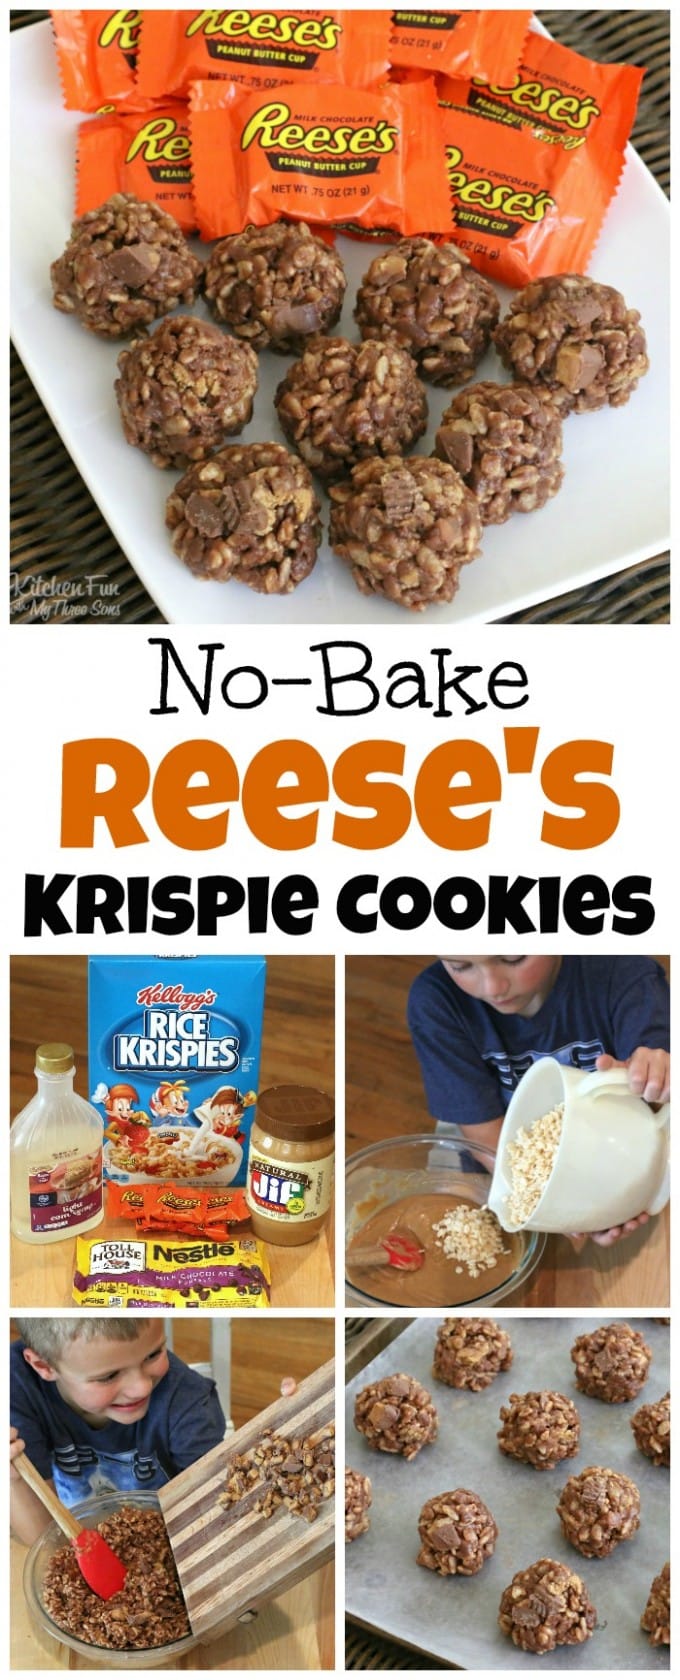 No-Bake Krispie Reese's Cookies 